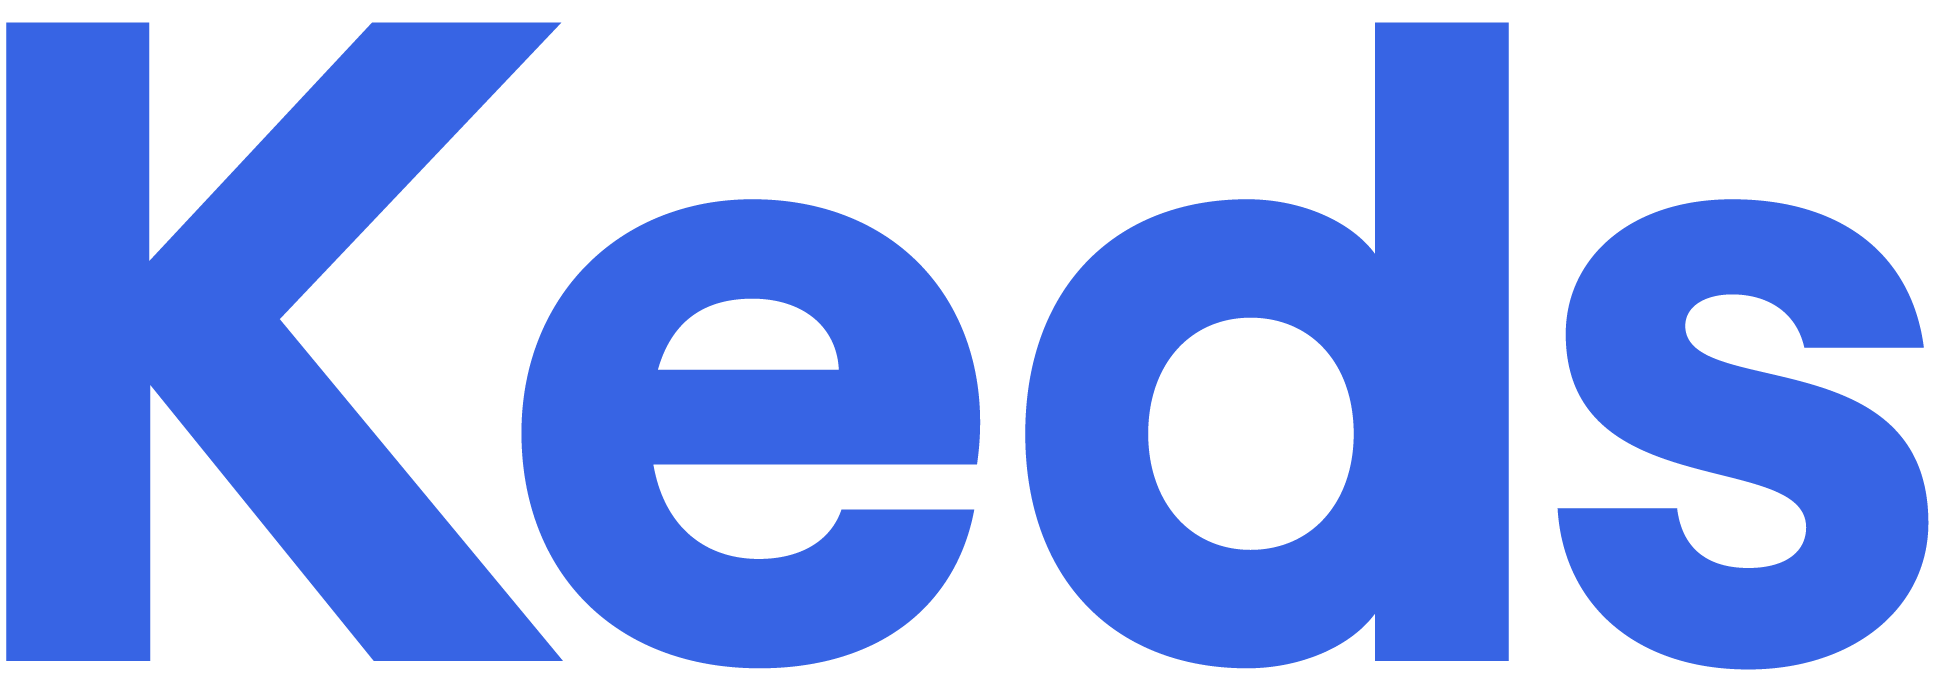 KEDS Logo